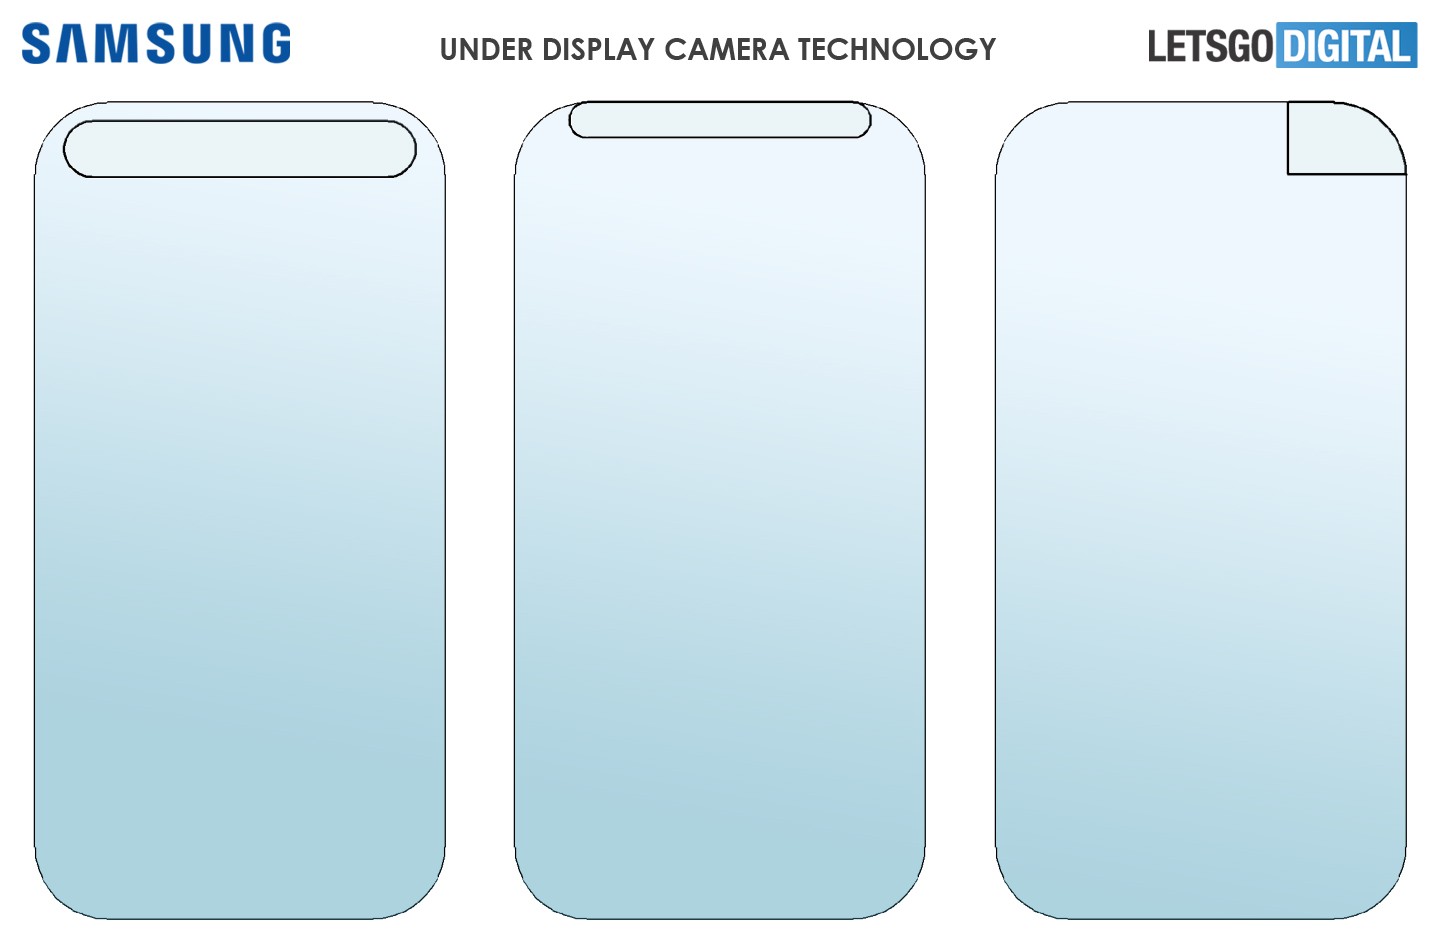 Samsung ’un ekran altı kamera teknolojisi ortaya çıktı